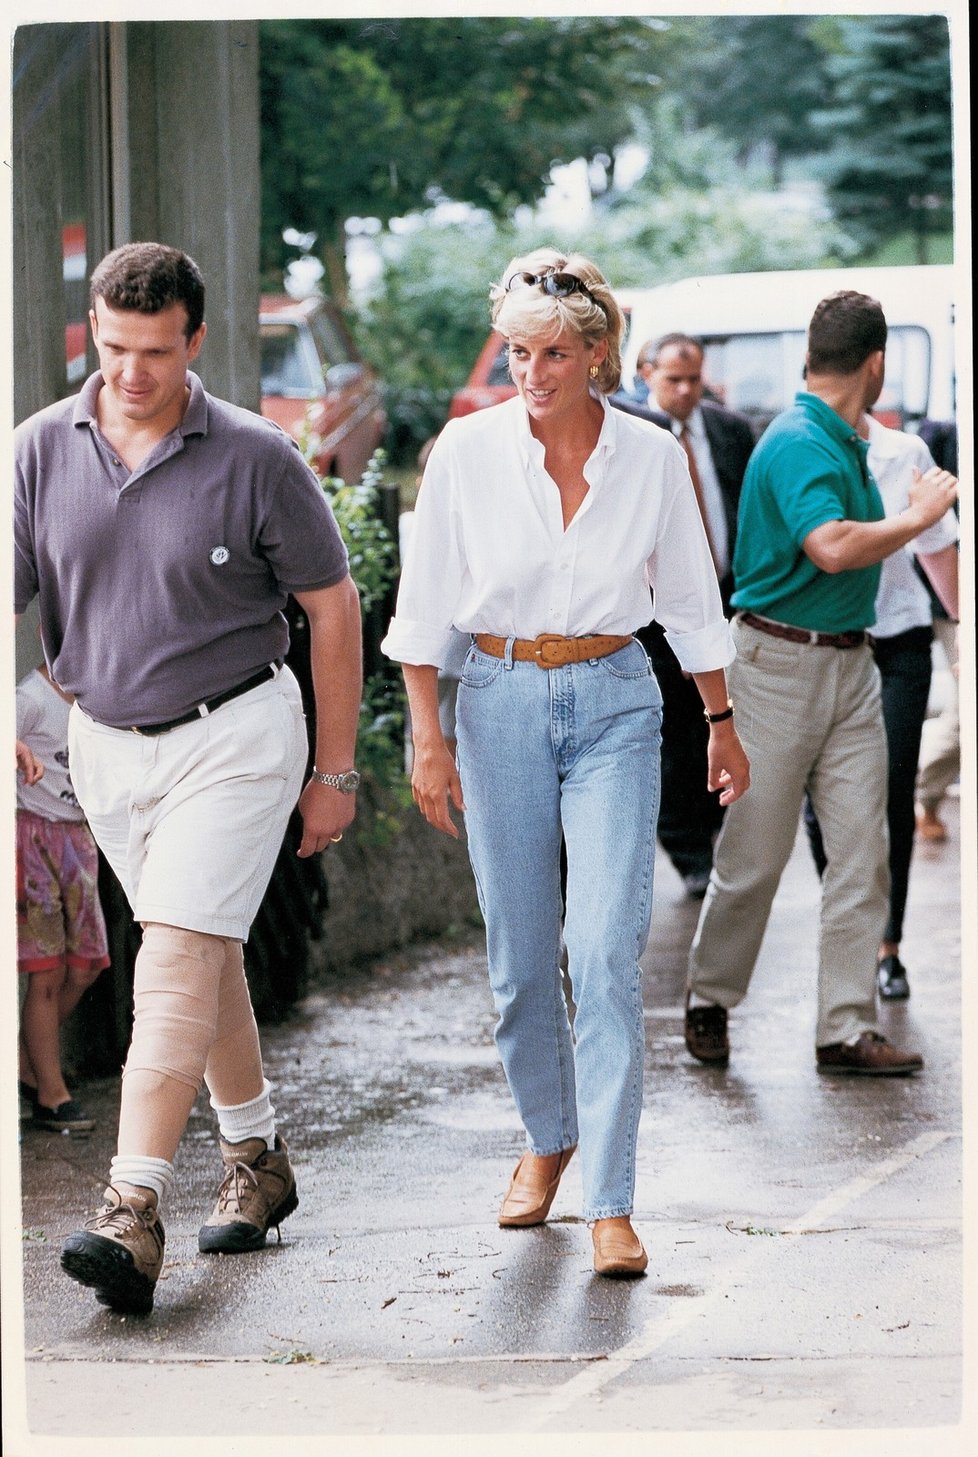 1997: Princezna Diana v džínech v Bosně s Červeným křížem.